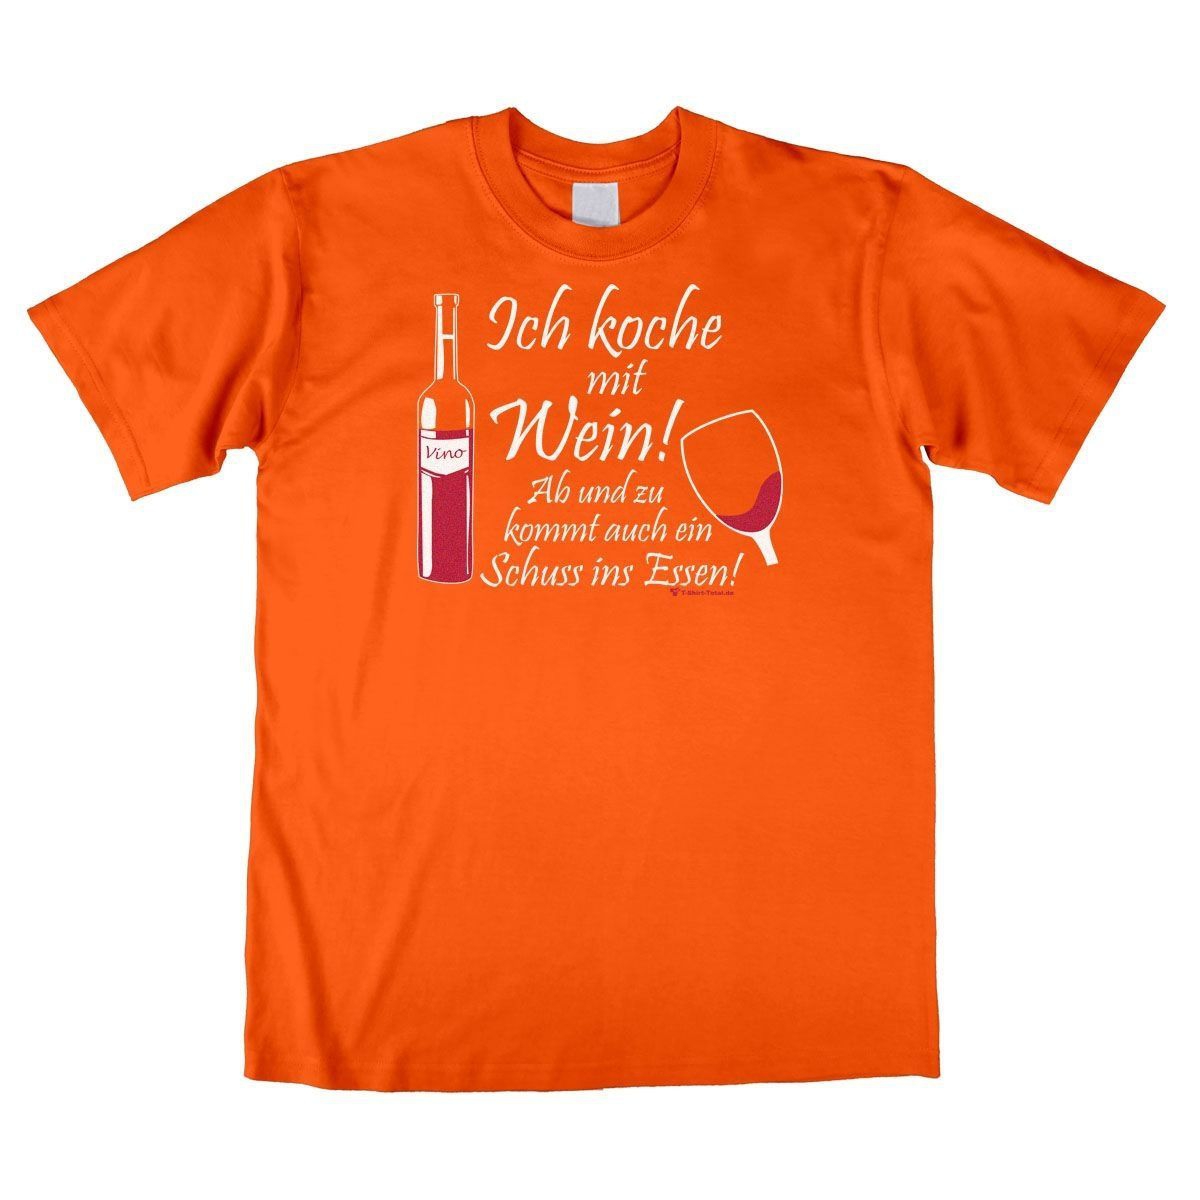 Koche mit Wein Unisex T-Shirt orange Medium